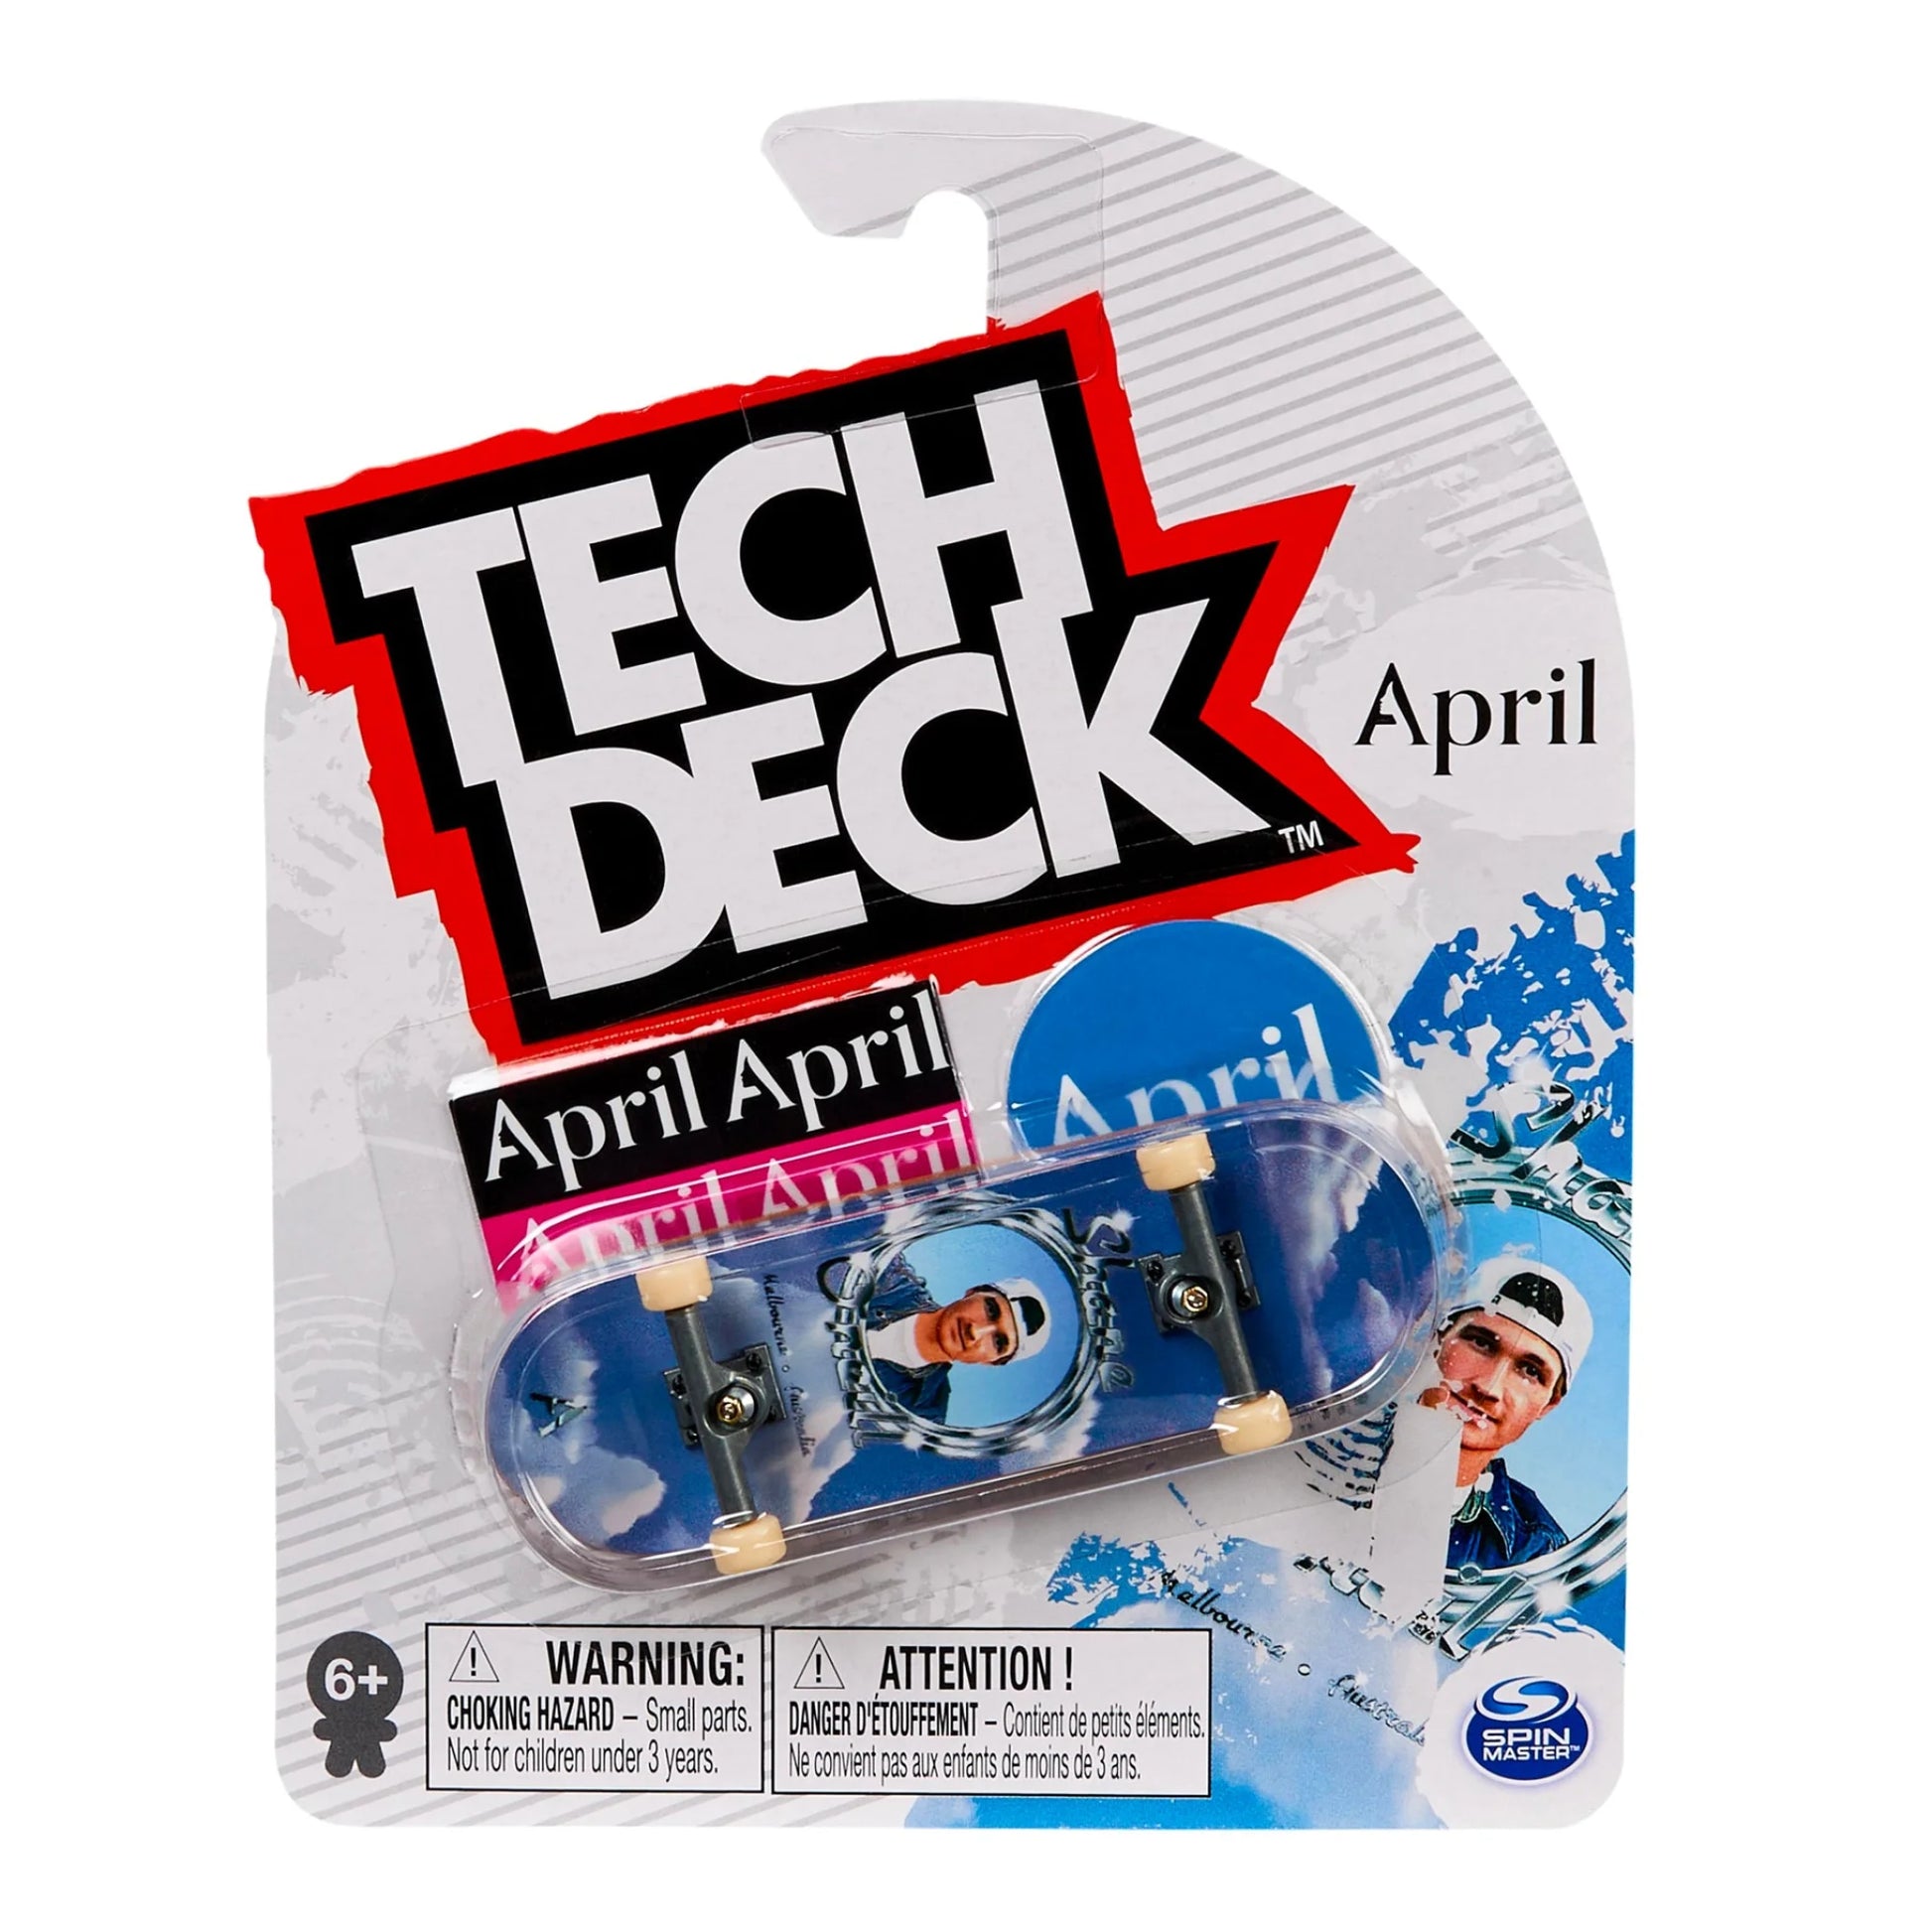 April - Shane Oneil Tech Deck Fingerboard (M46) - 96mm - Prime Delux Store